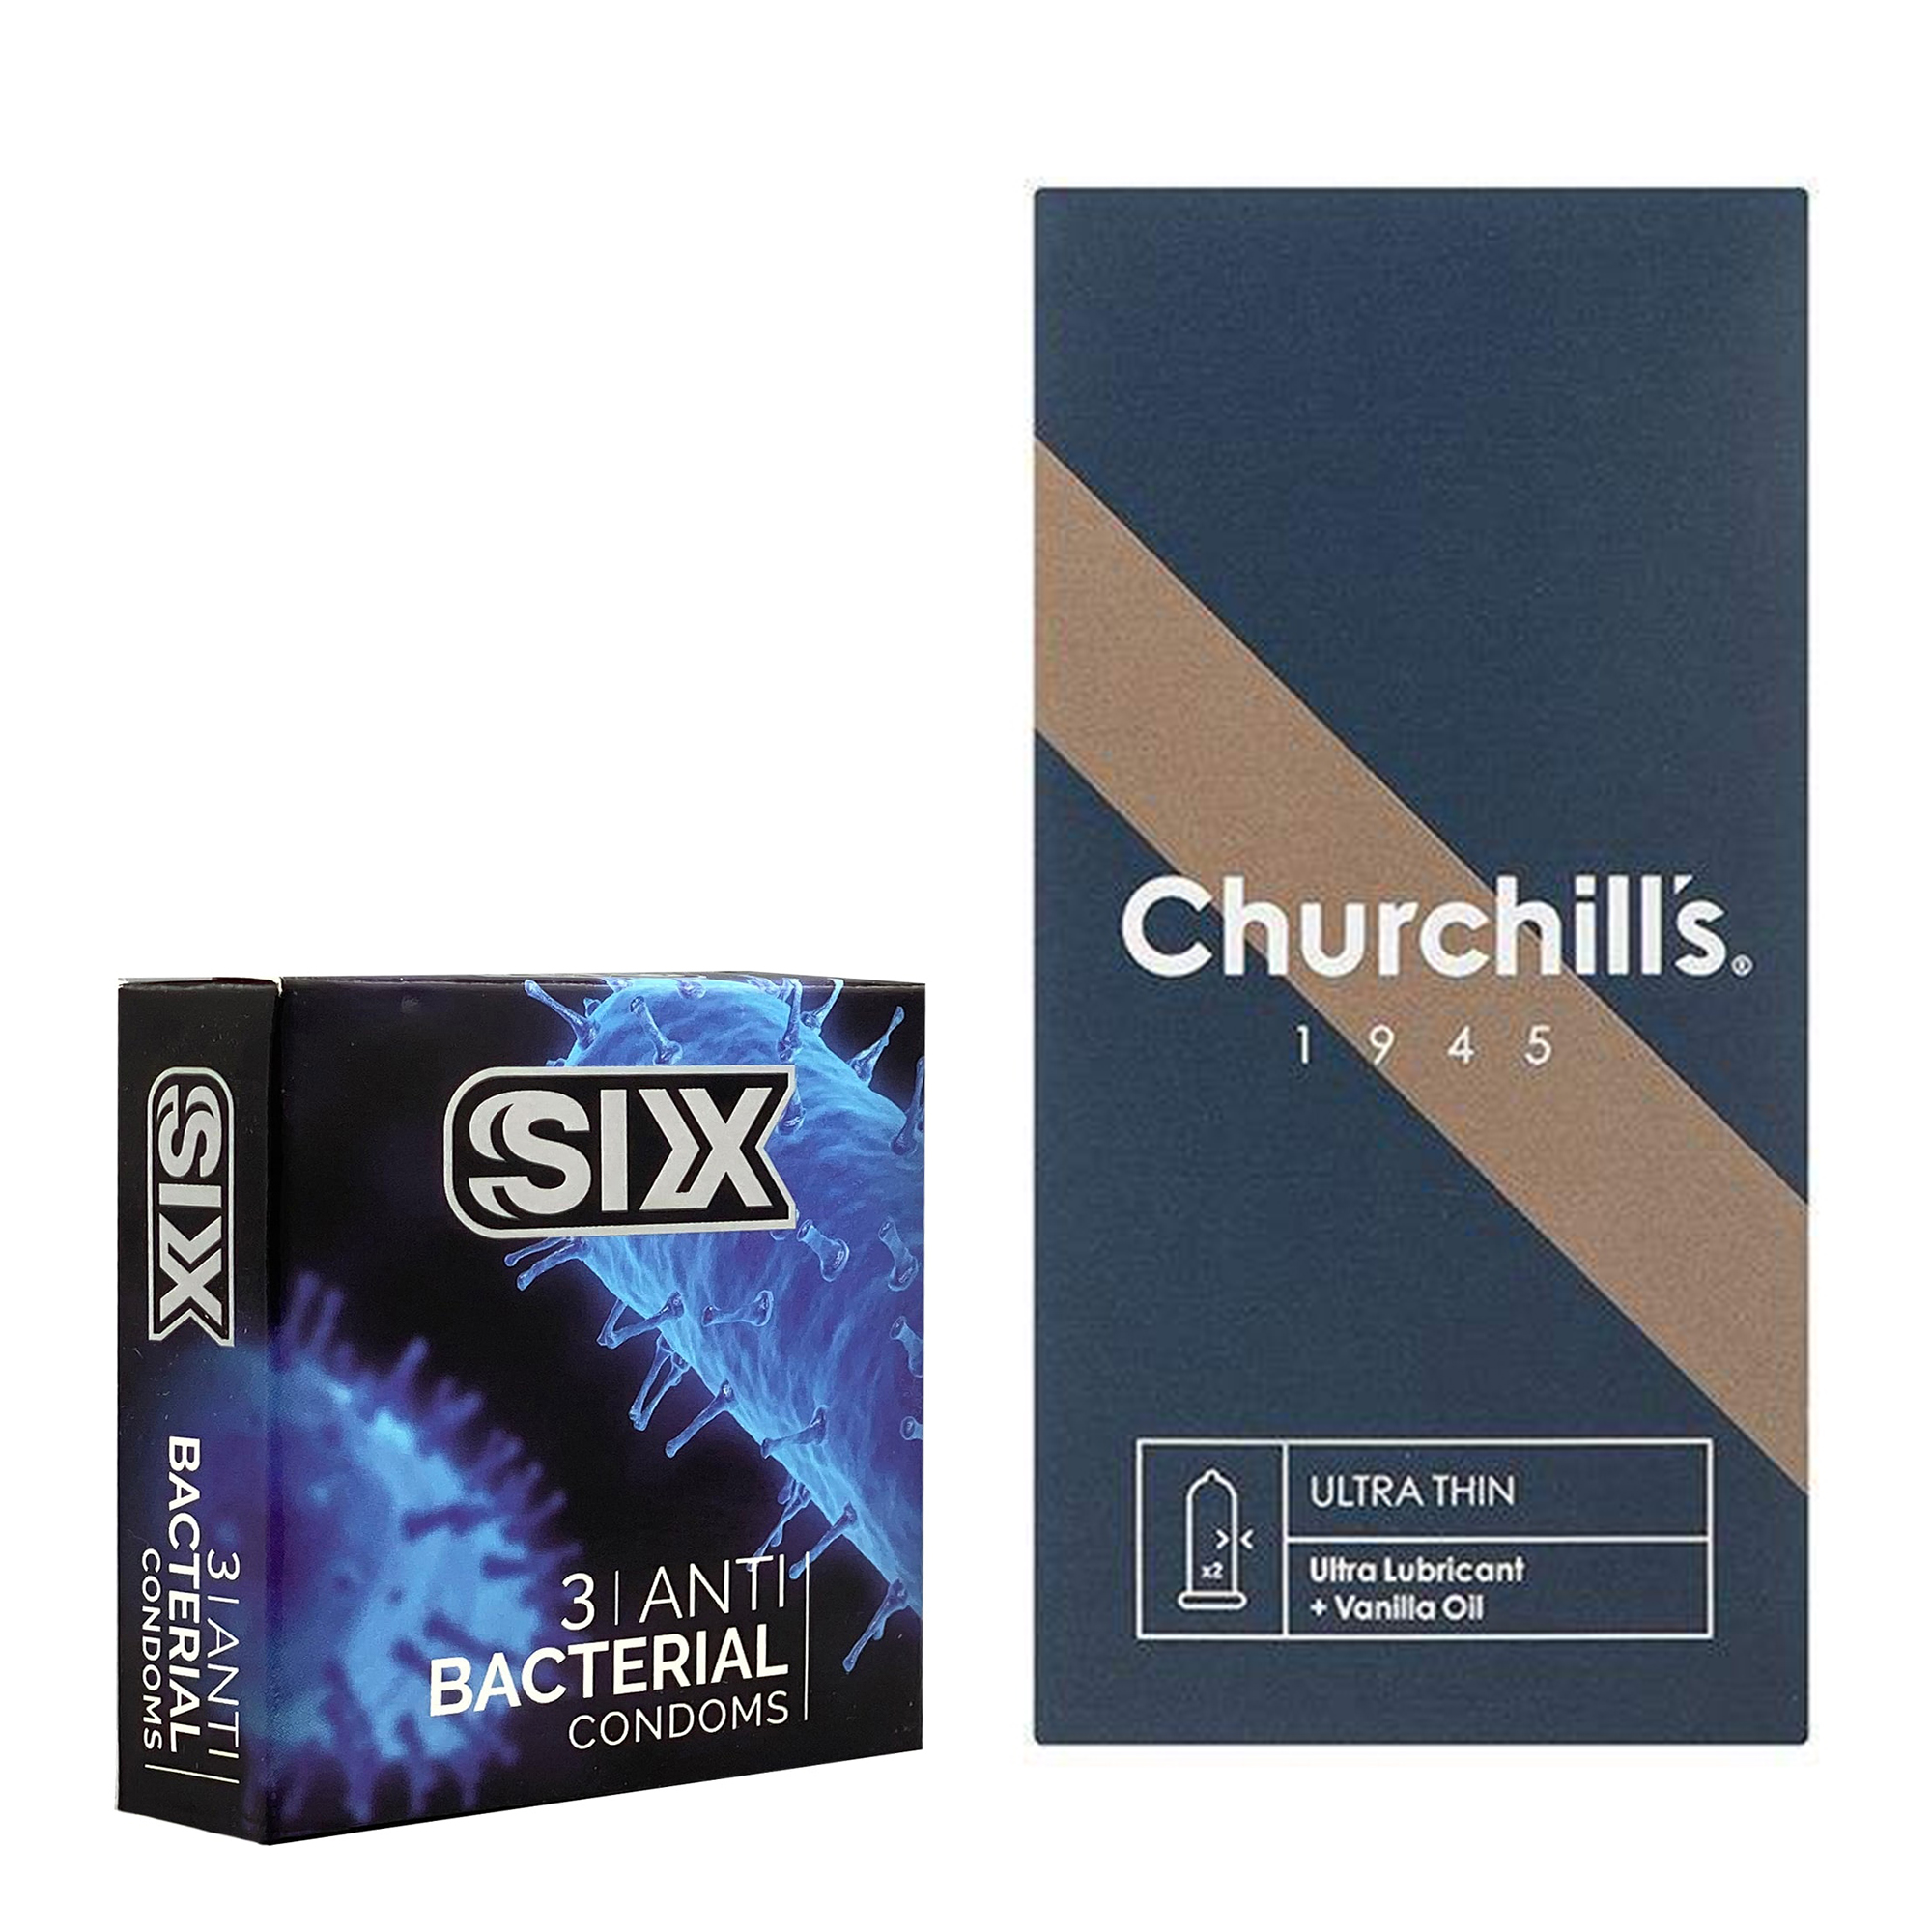 نکته خرید - قیمت روز کاندوم چرچیلز مدل Ultra Thin بسته 12 عددی به همراه کاندوم سیکس مدل آنتی باکتریال بسته 3 عددی خرید